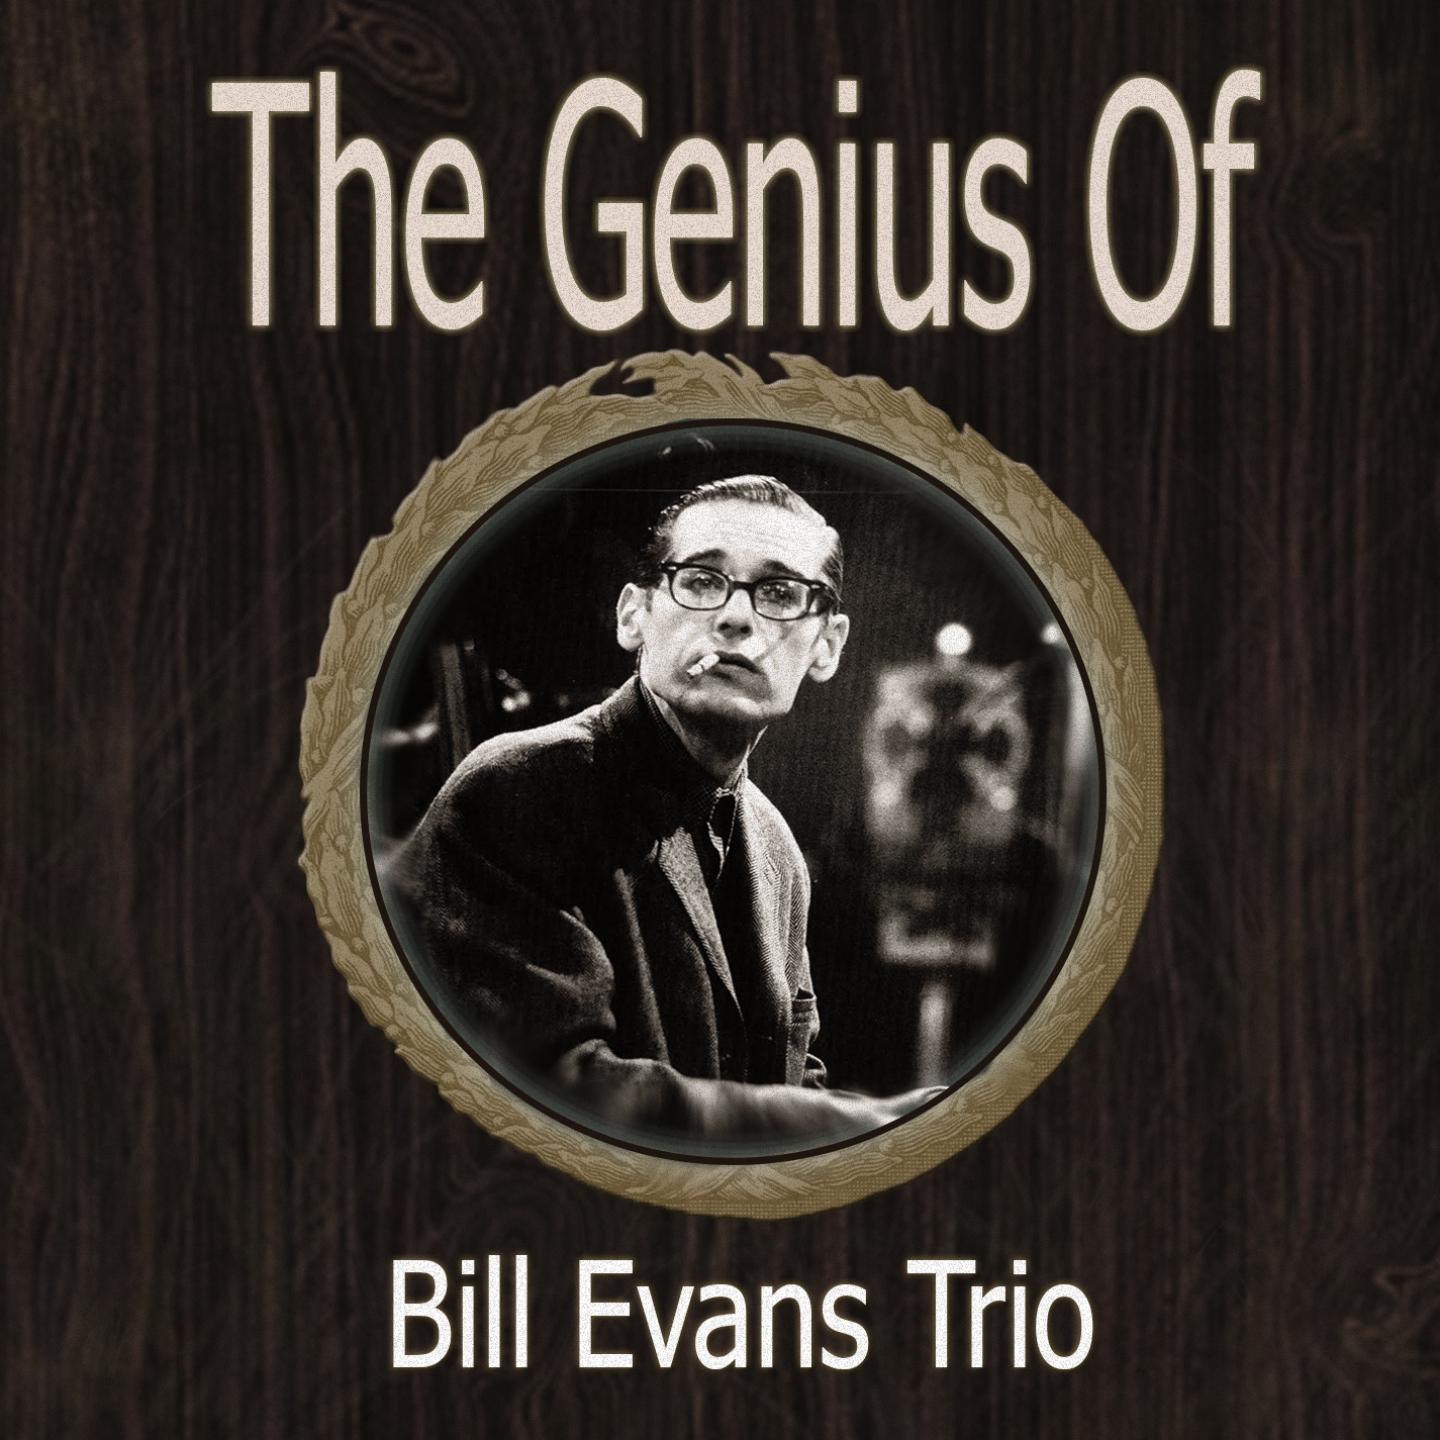 The Genius of Bill Evans Trio